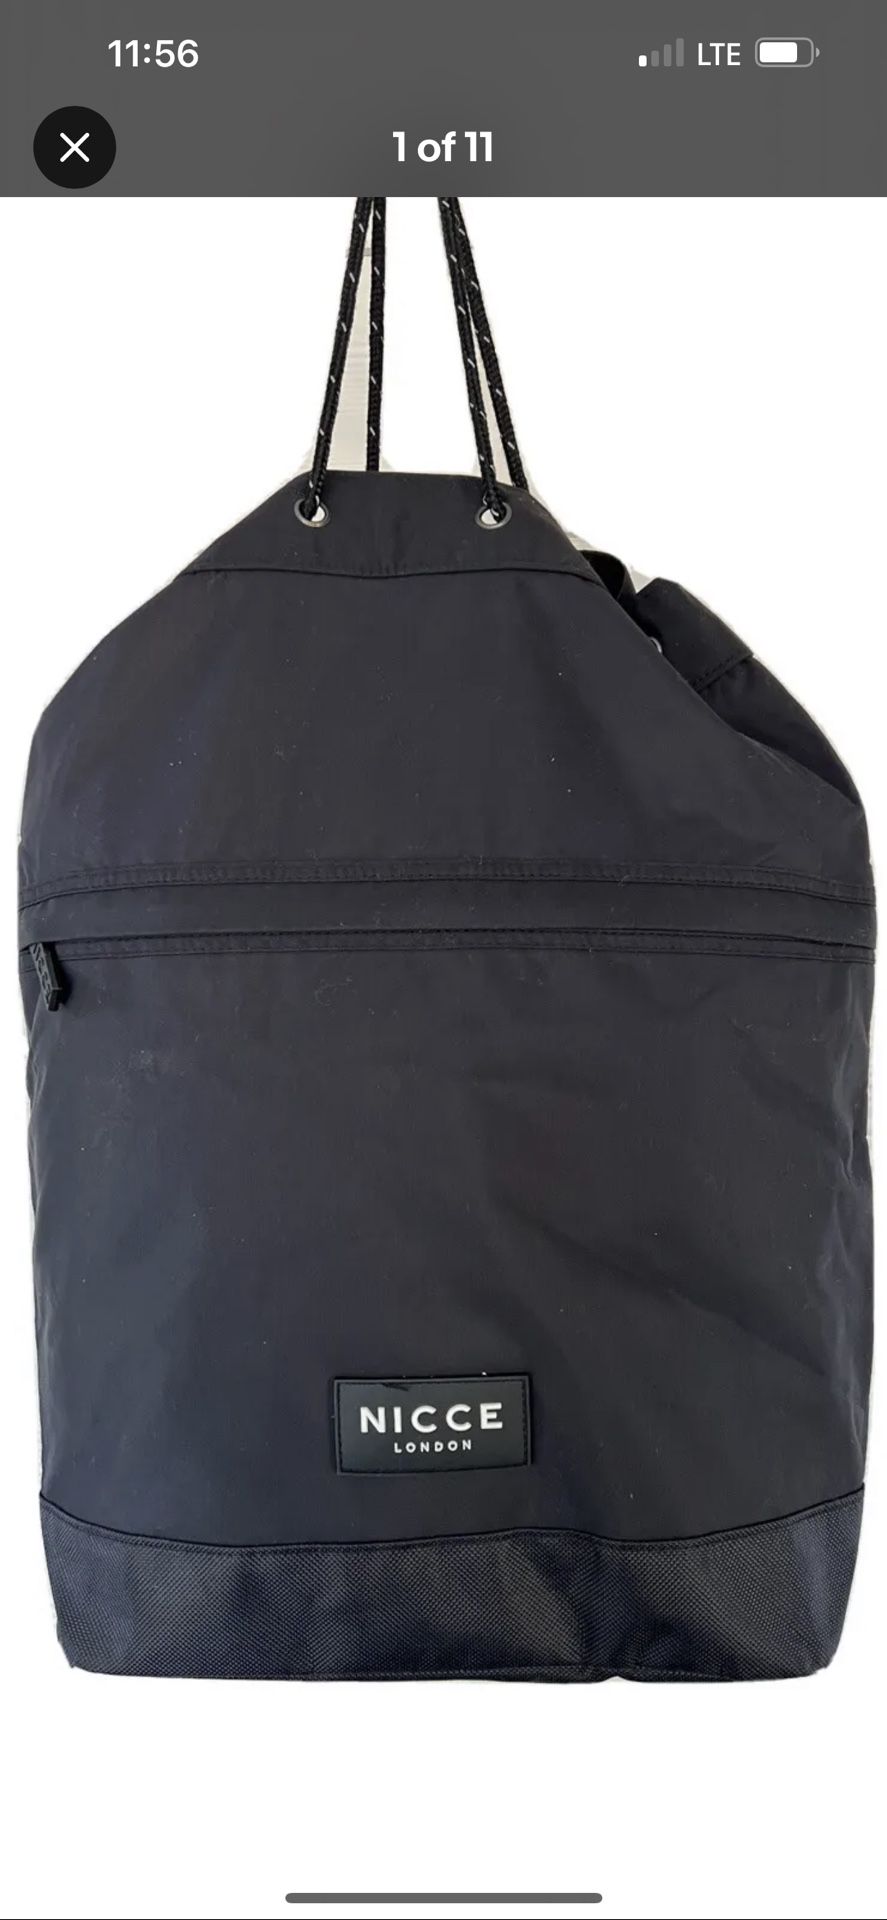 NICCE London Backpack Shoulder Bag, luggage bag, School Rucksack, Black base